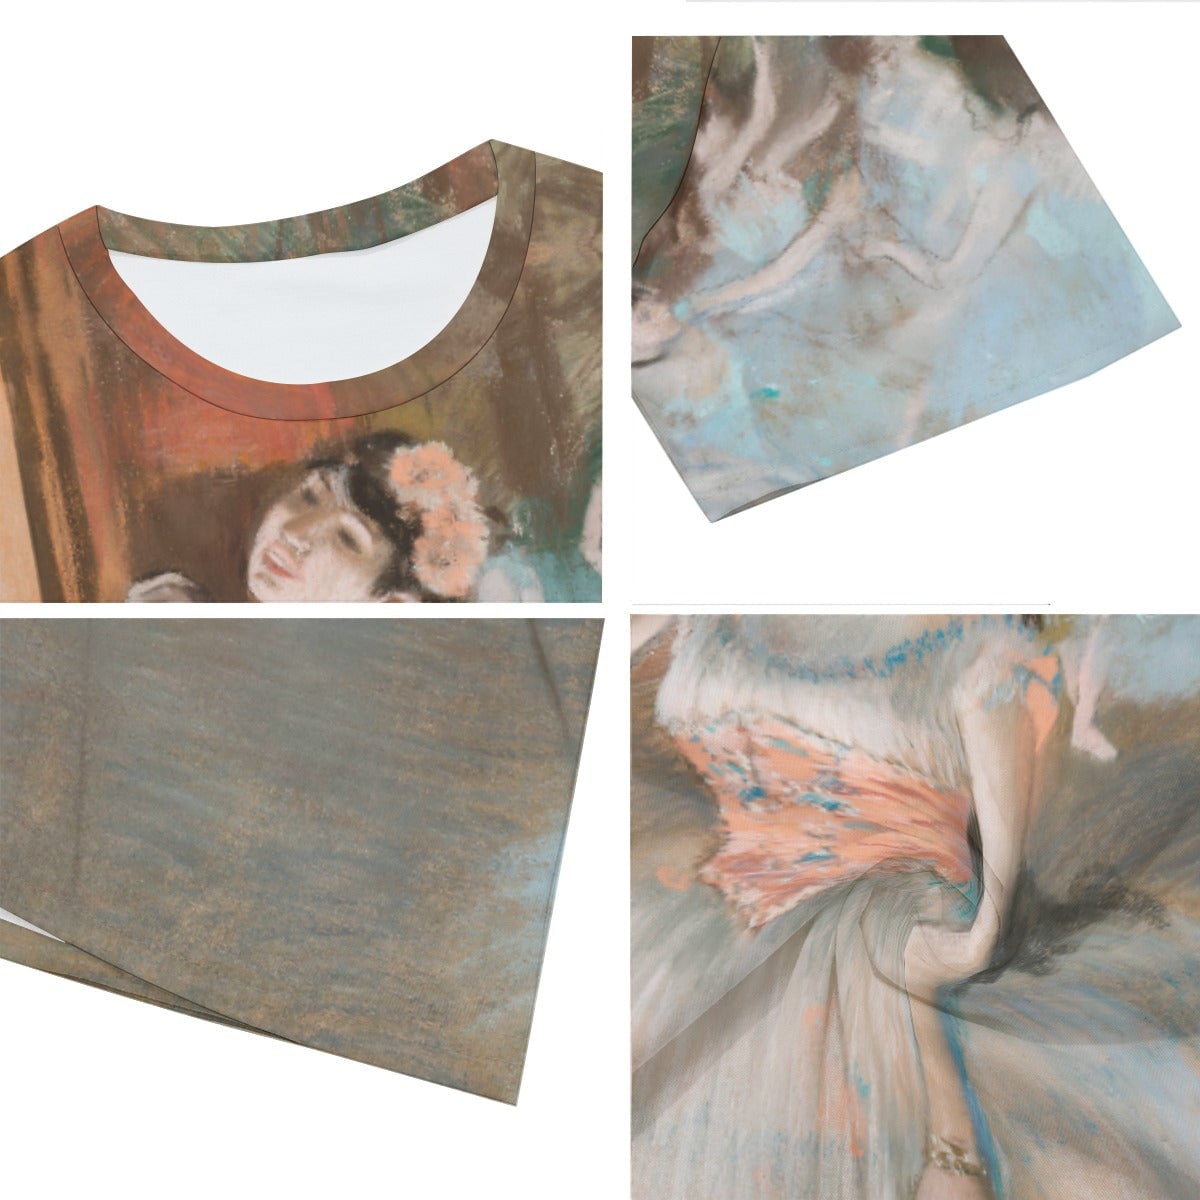 The Star Ballet Dancer by Edgar Degas T-Shirt